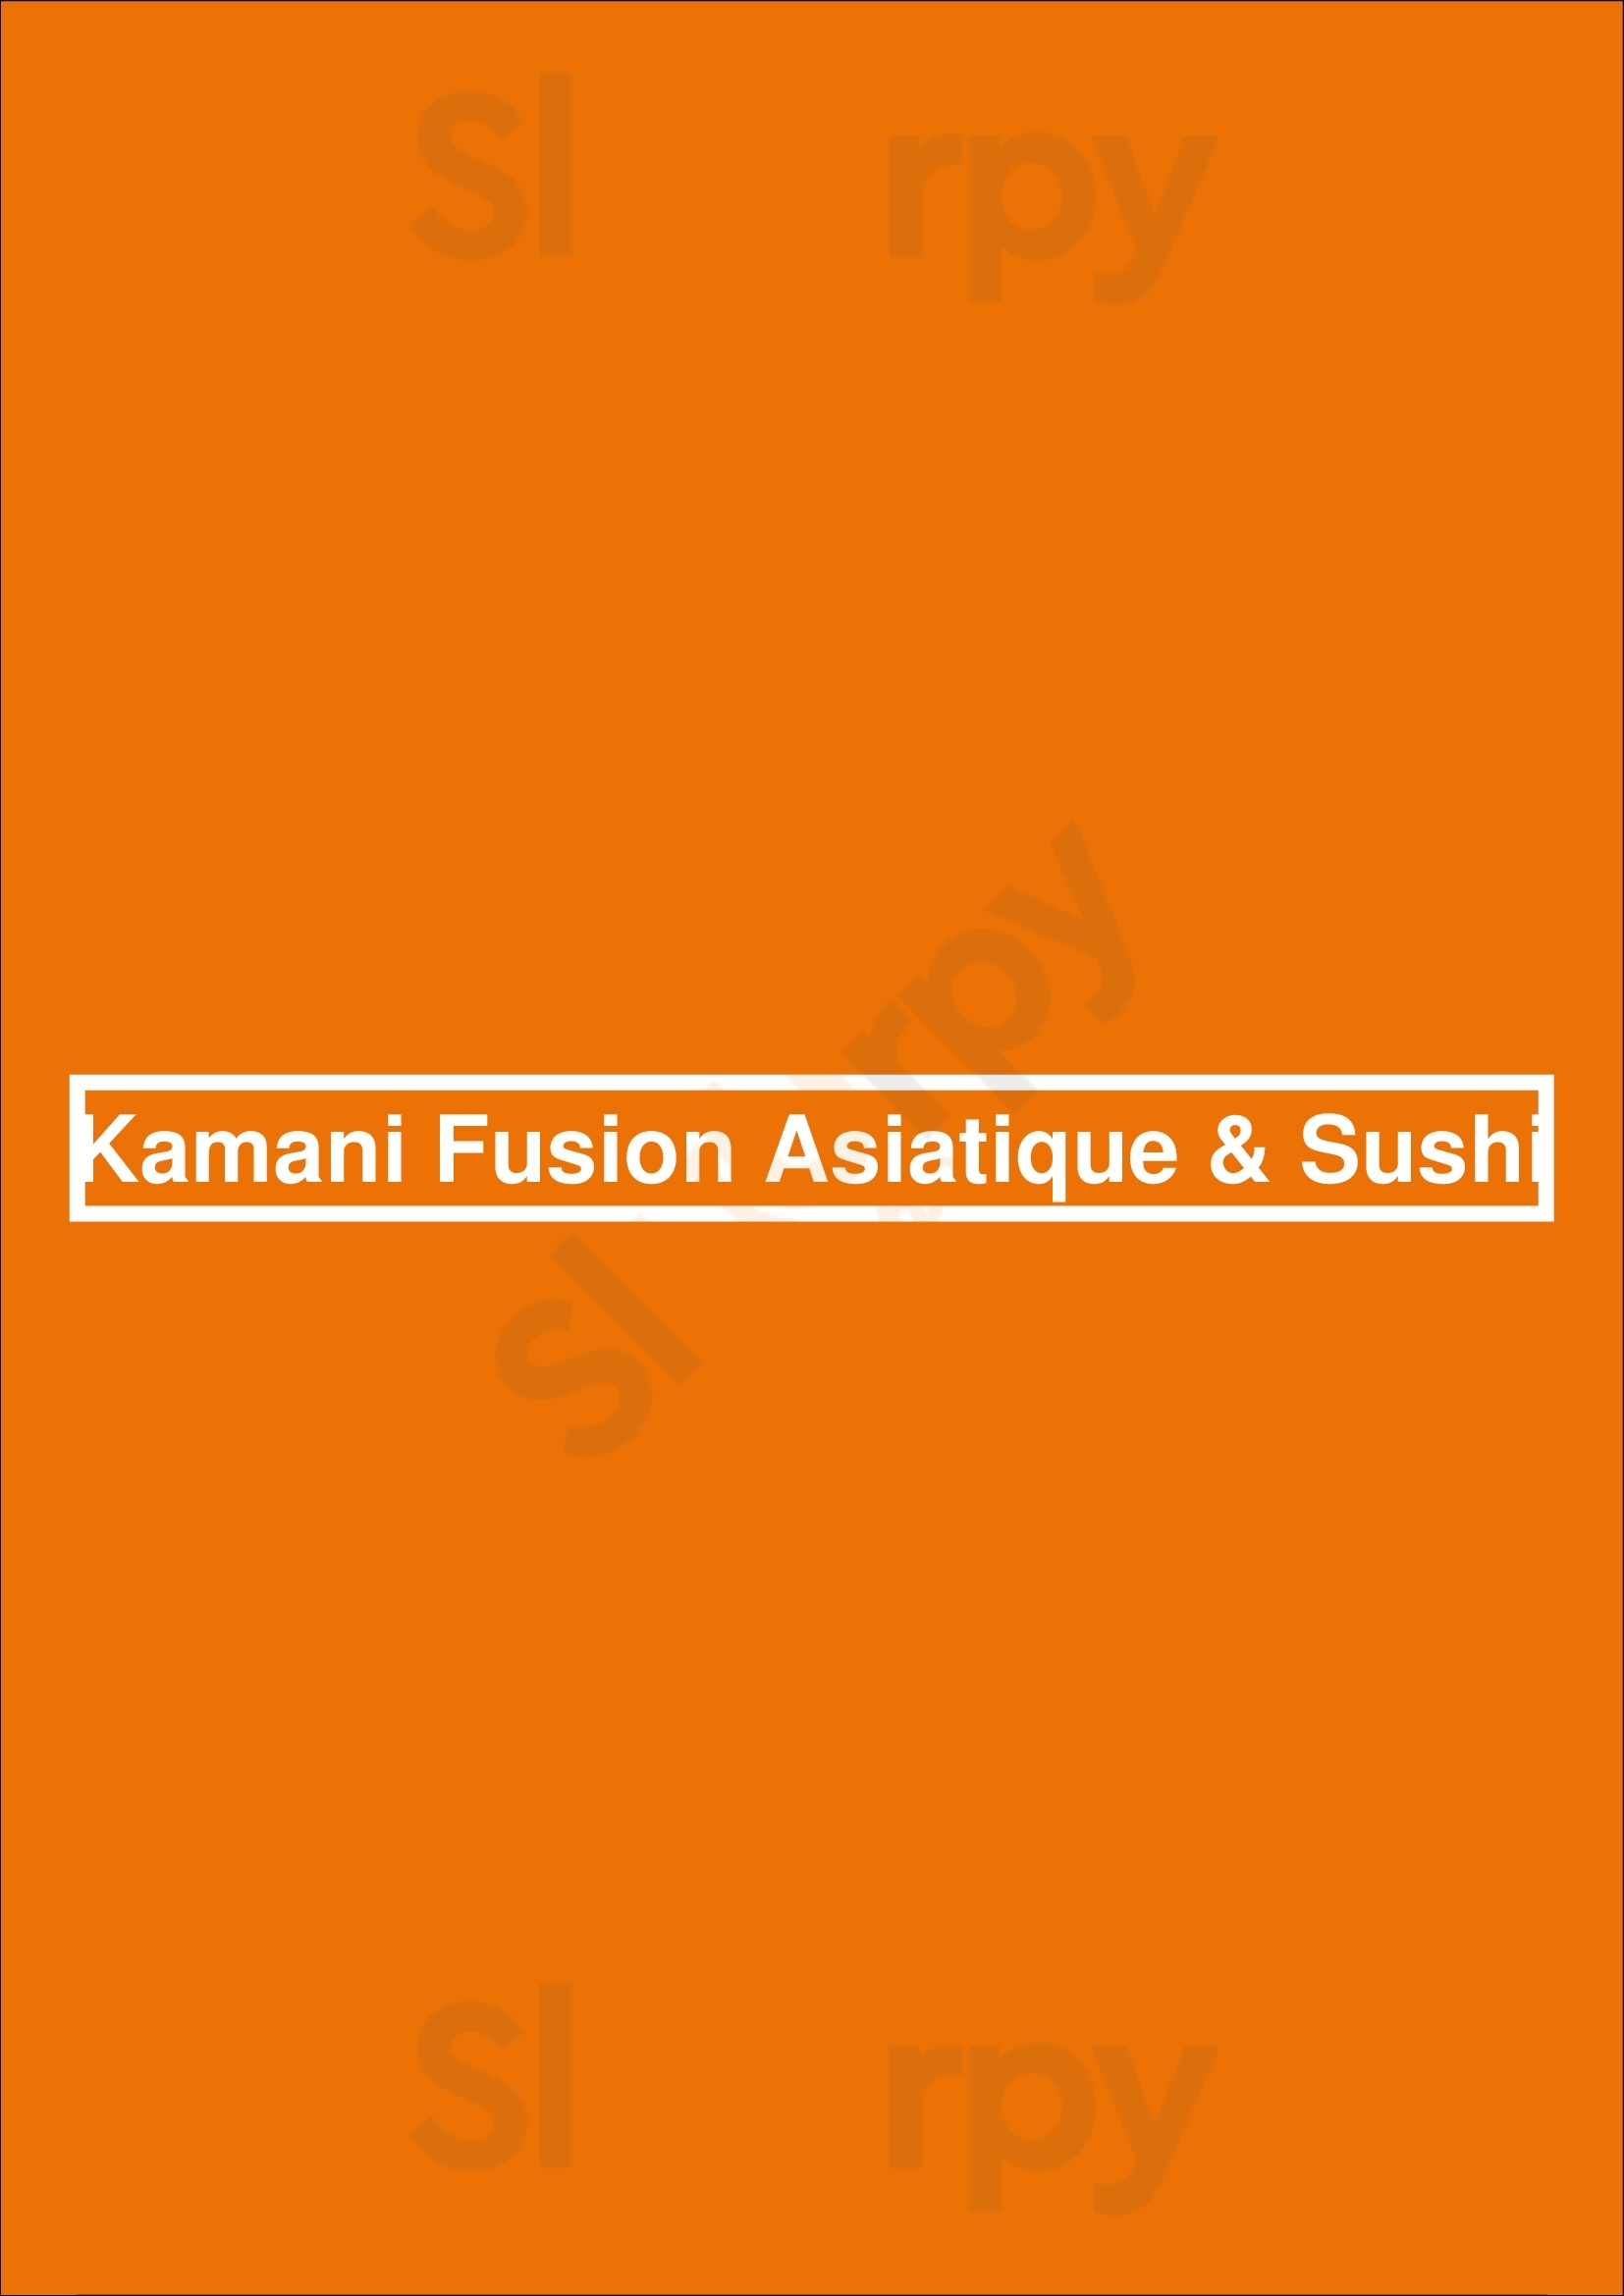 Kamani Fusion Asiatique & Sushi Laval Menu - 1